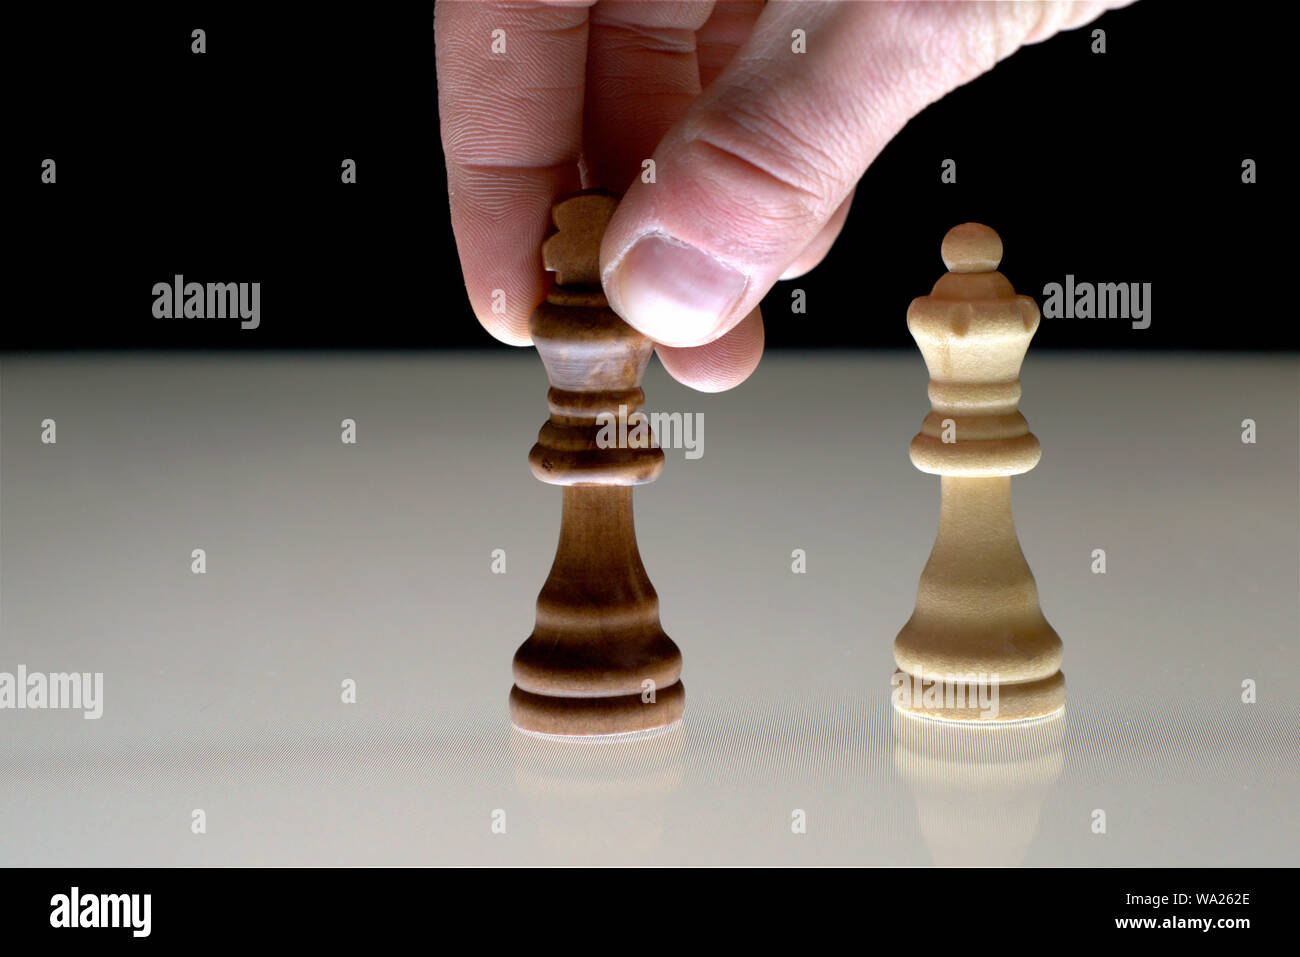 Lato muovendo un nero a scacchi re accanto alla regina bianca, come un concetto di rivalità, concorrenza, giochi di potere. Foto Stock